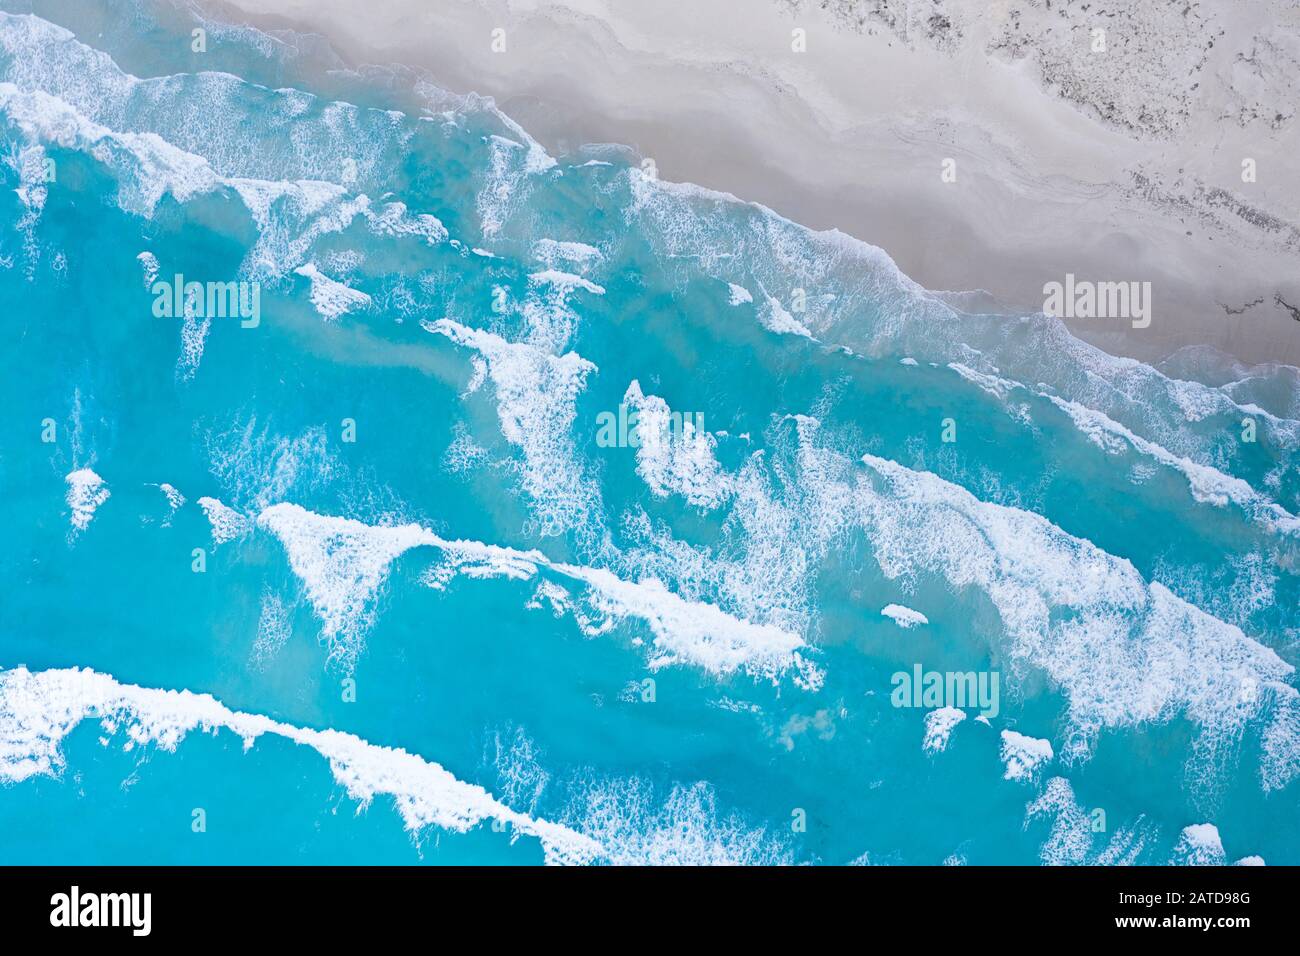 Veduta aerea del surf sull'oceano sulla spiaggia, Australia Occidentale, Australia Foto Stock